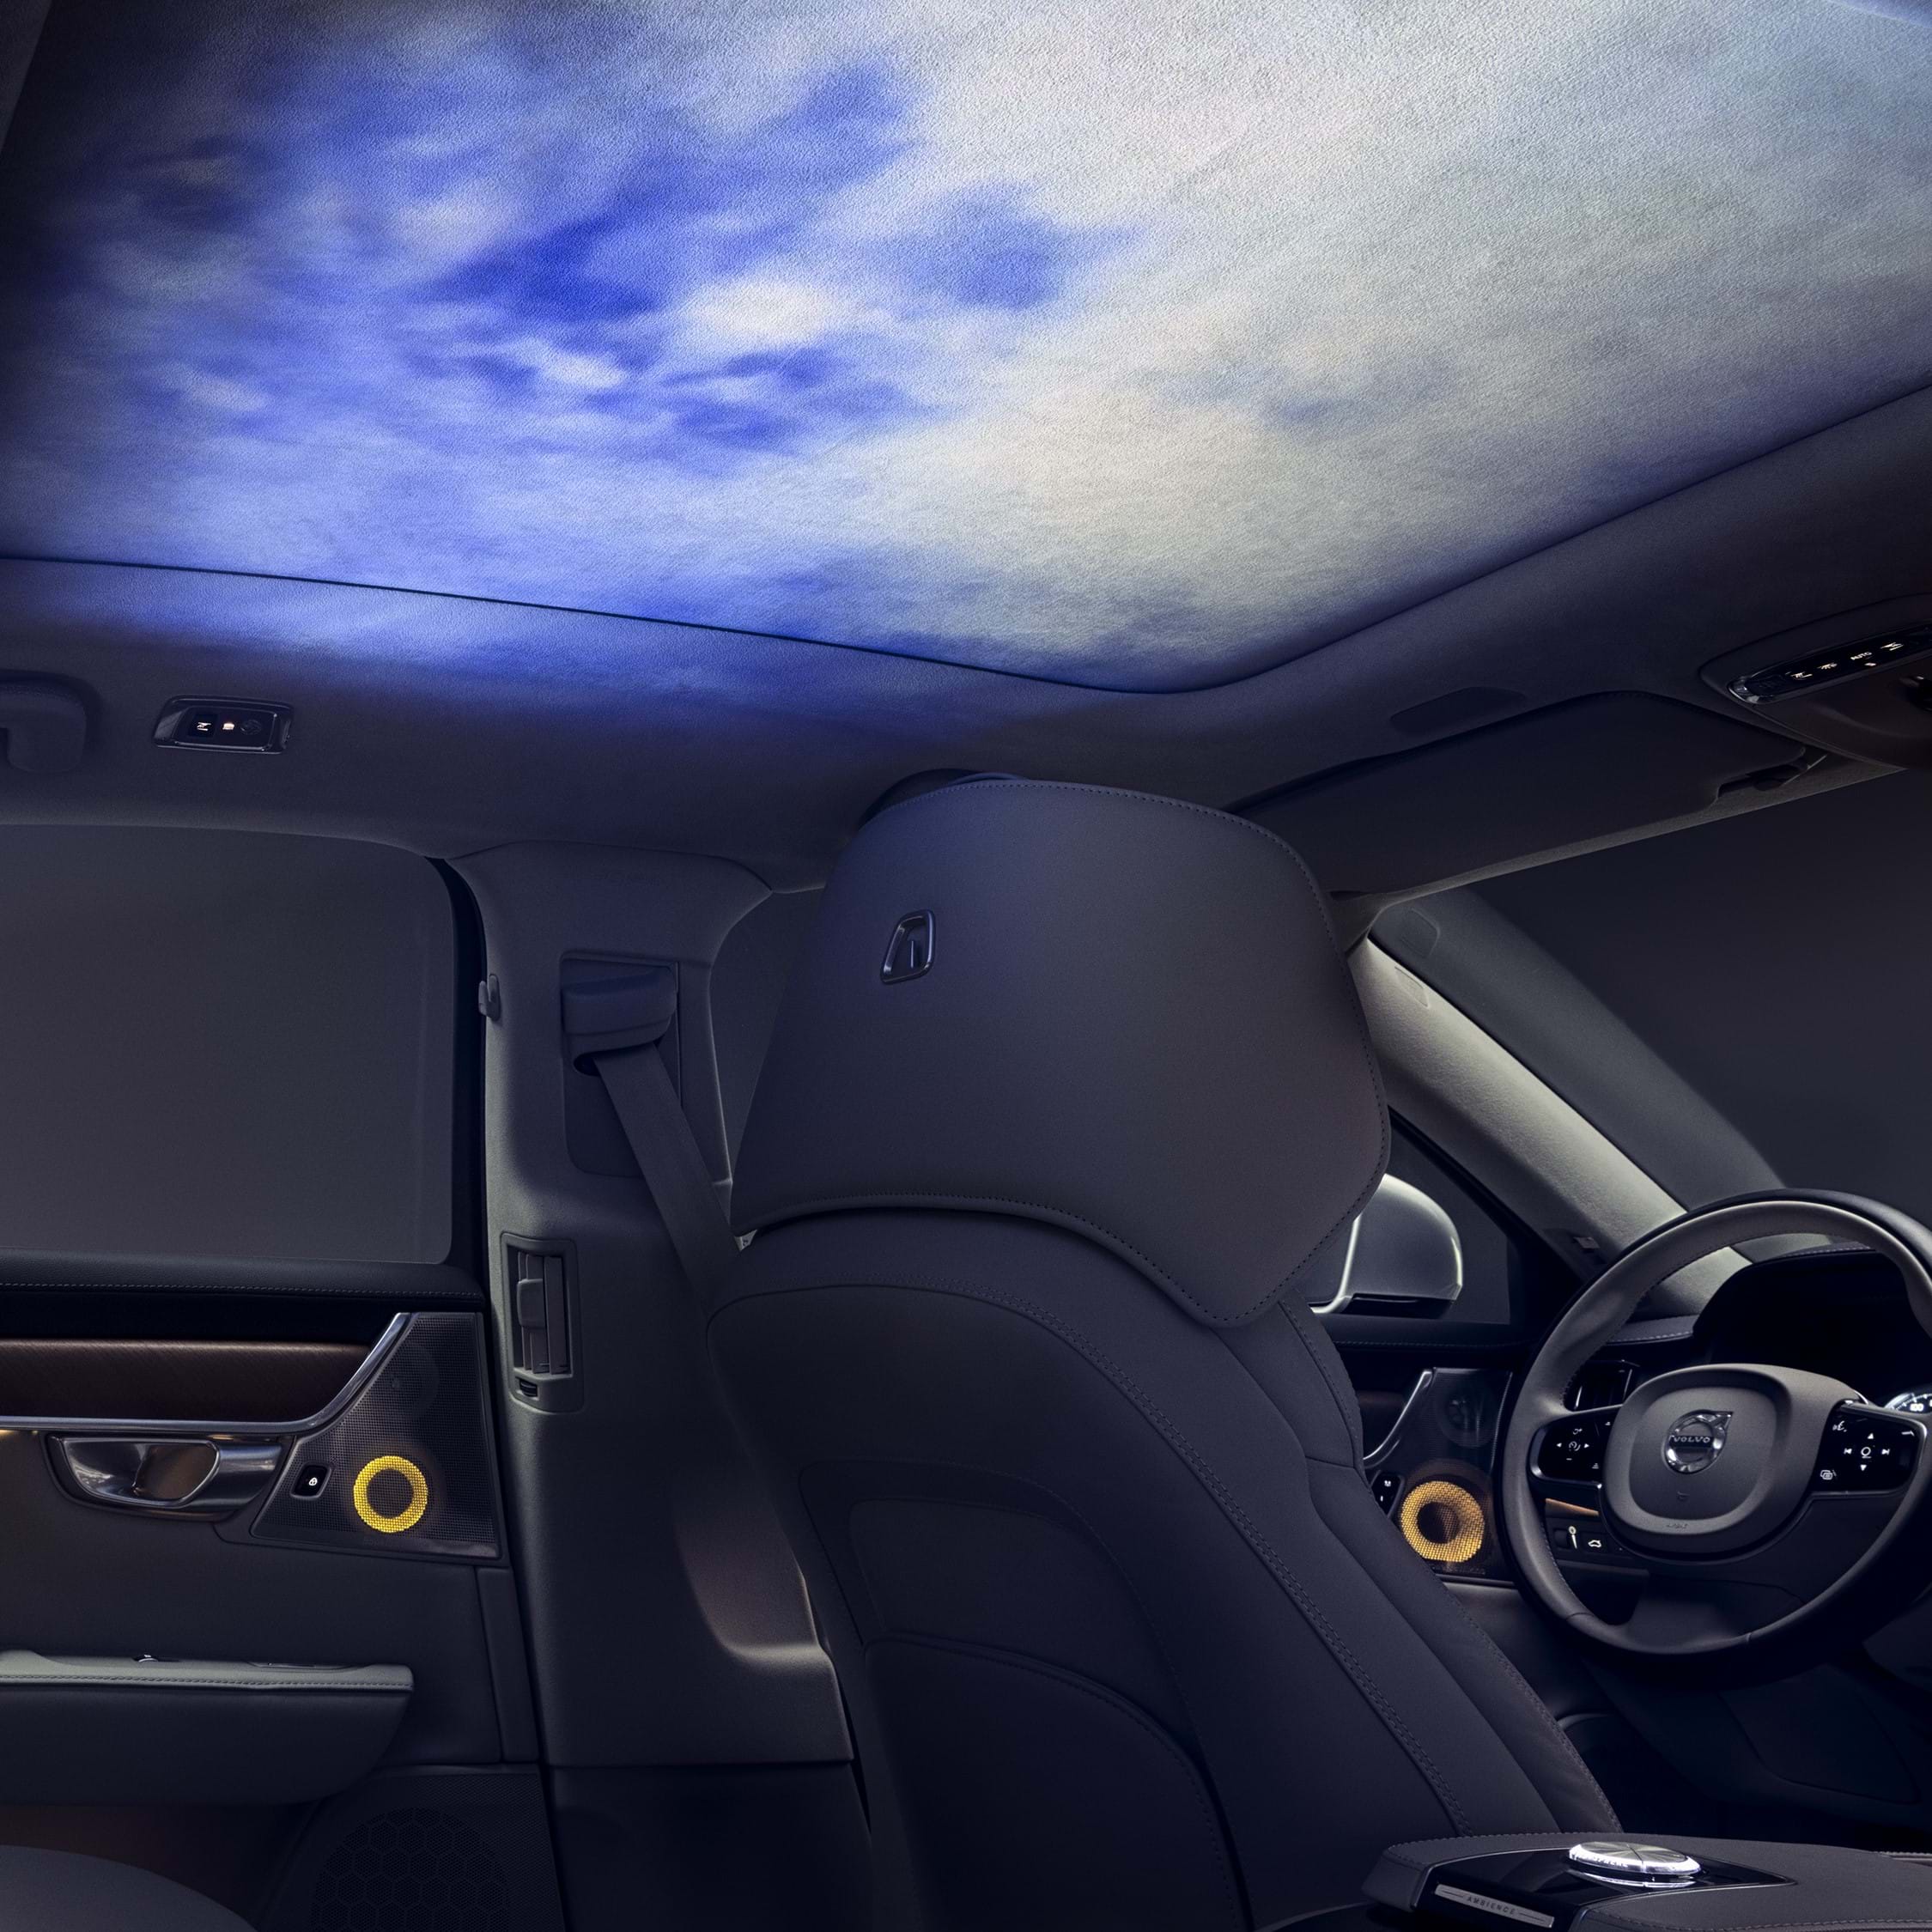 Interior al unei mașini Volvo cu lumină ambientală proiectată pe interiorul acoperișului